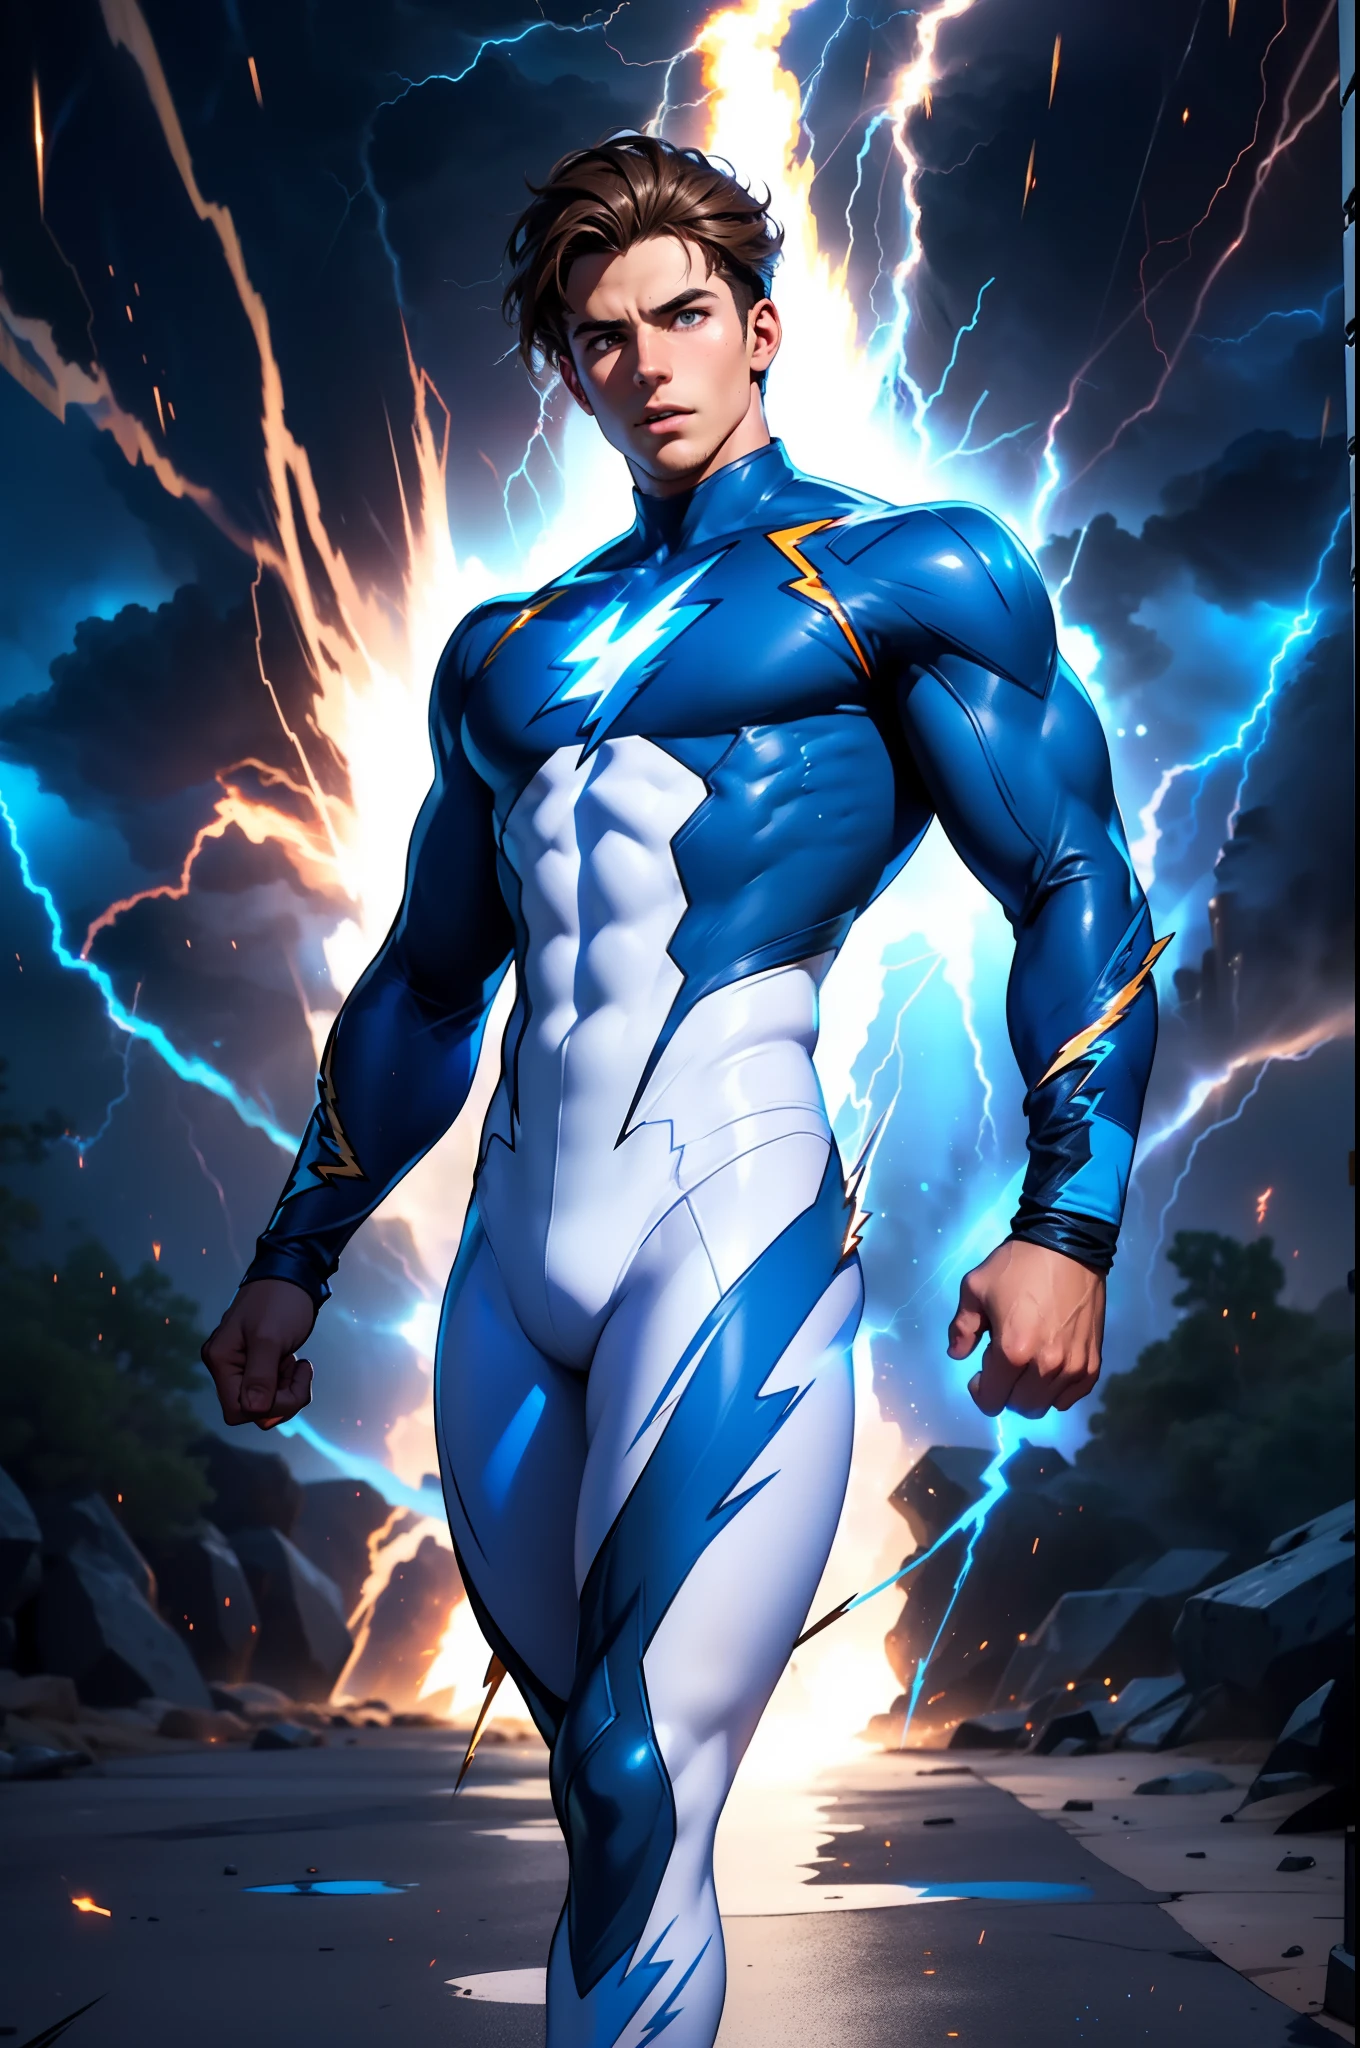 Super heroi, Homem, 23 anos, cabelo castanho, olhos castanhos, (meia-calça branca e azul), (cercado por relâmpagos:1.4), transformando-se em eletricidade, fotorrealista, efeitos de partículas, traçado de raio, profundidade de campo,